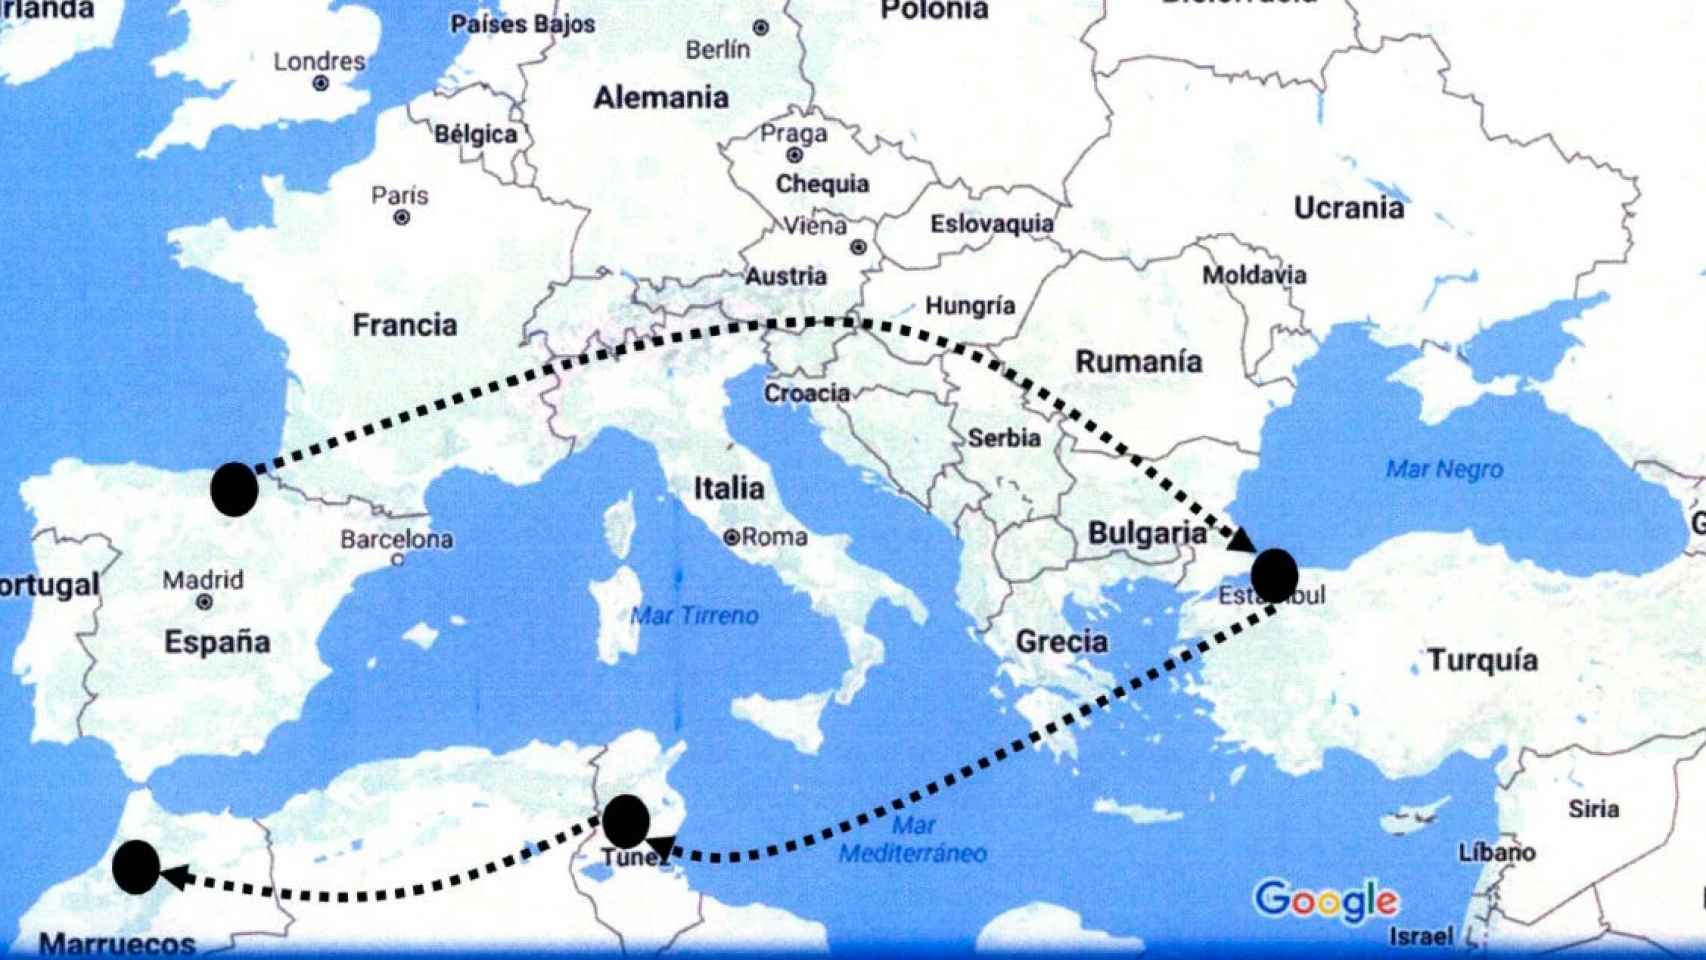 Ruta del viaje de Yayah Nouri desde España a Turquía en un mapa de la Policía Nacional.